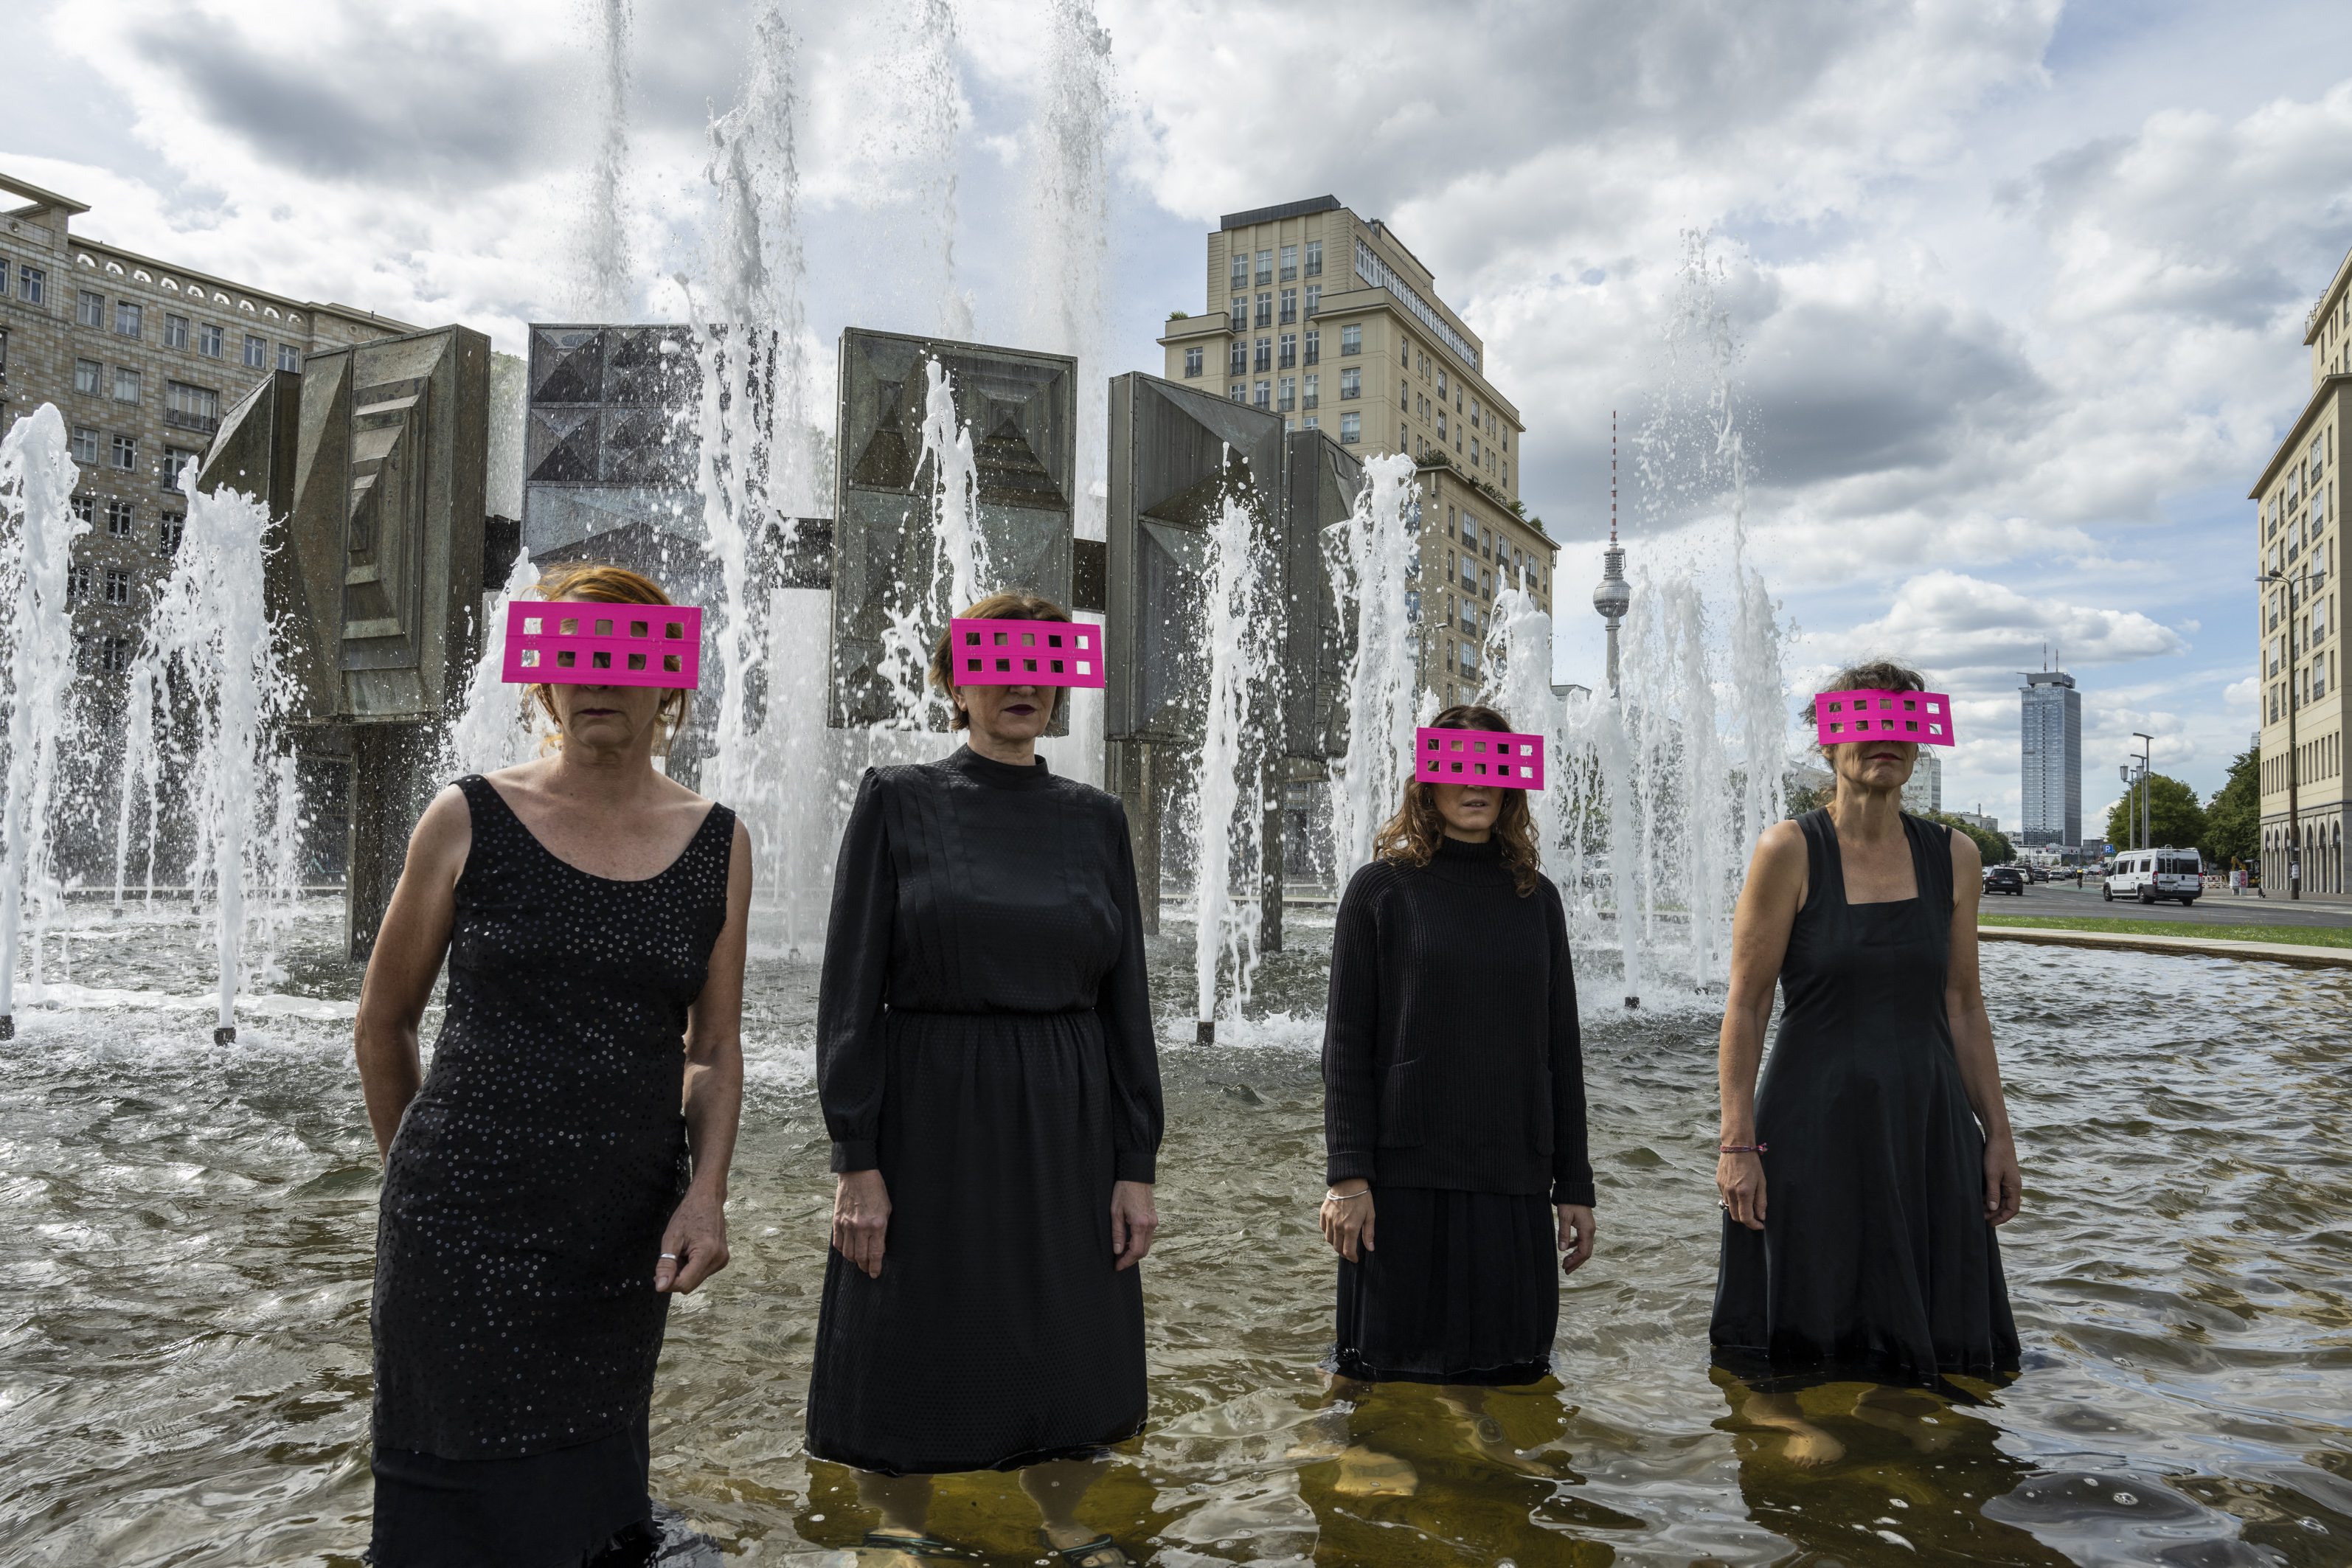 Vier Frauen stehen schwarz gekleidet in einem Brunnen. Sie tragen pinke Balken vor den Augen, die durchlöchert sind.